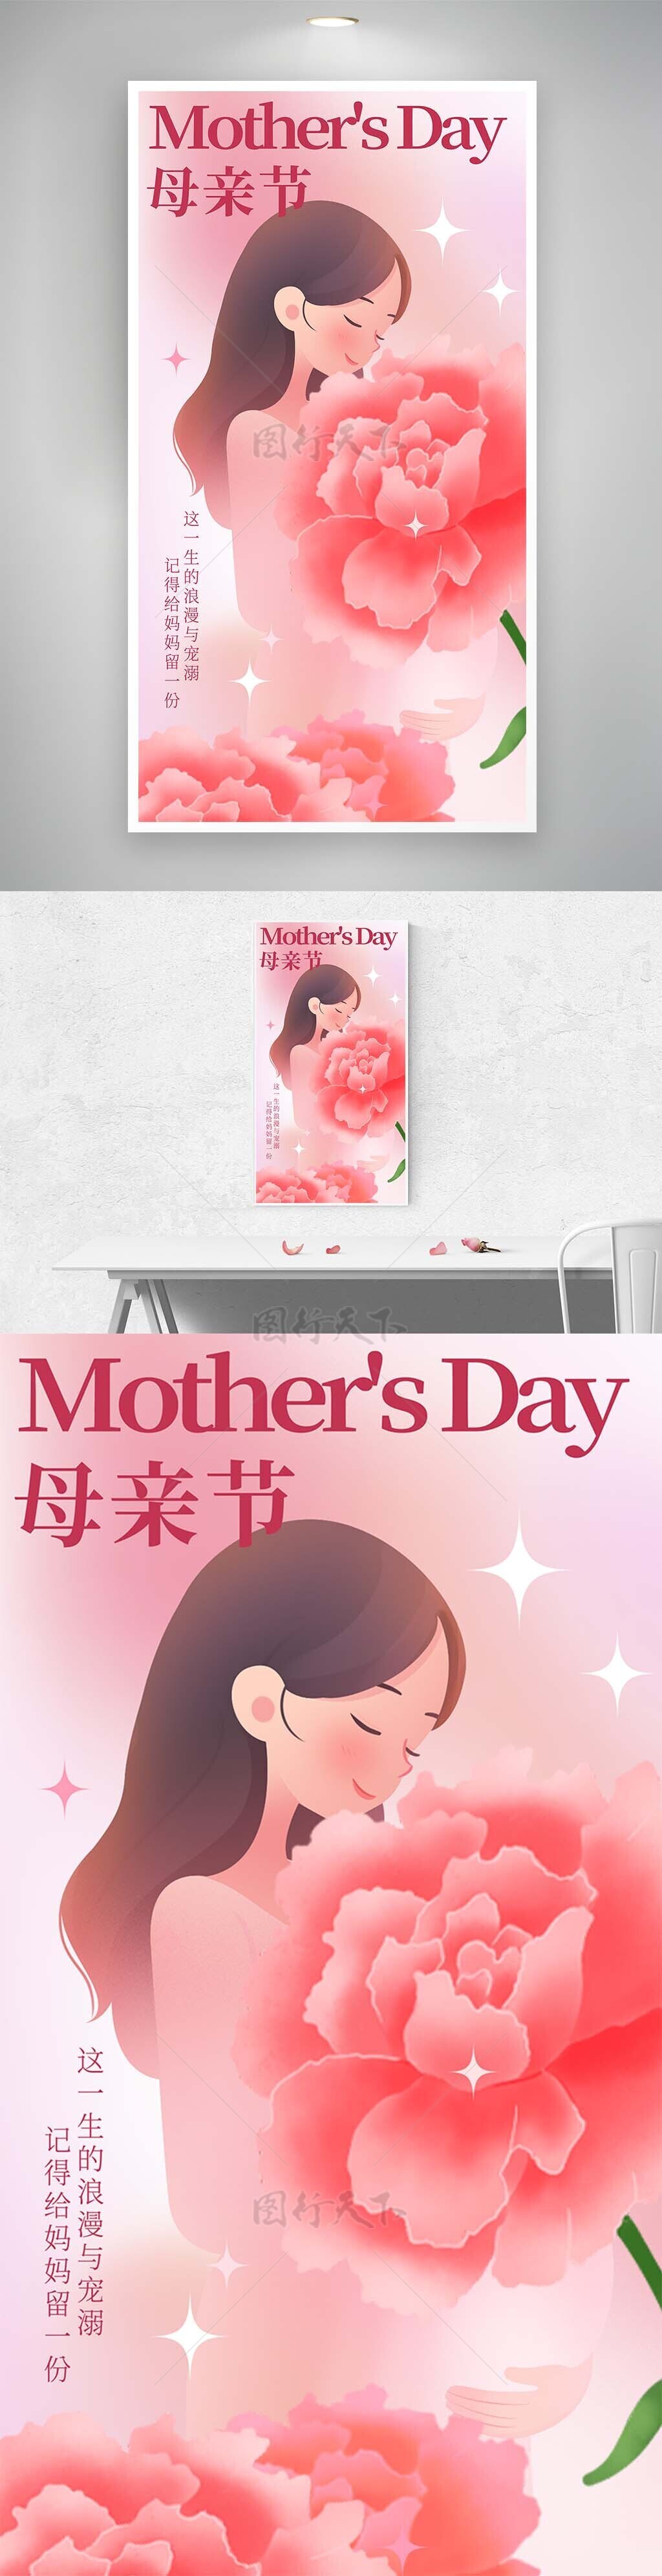 怀抱鲜花手绘母亲节创意人物海报